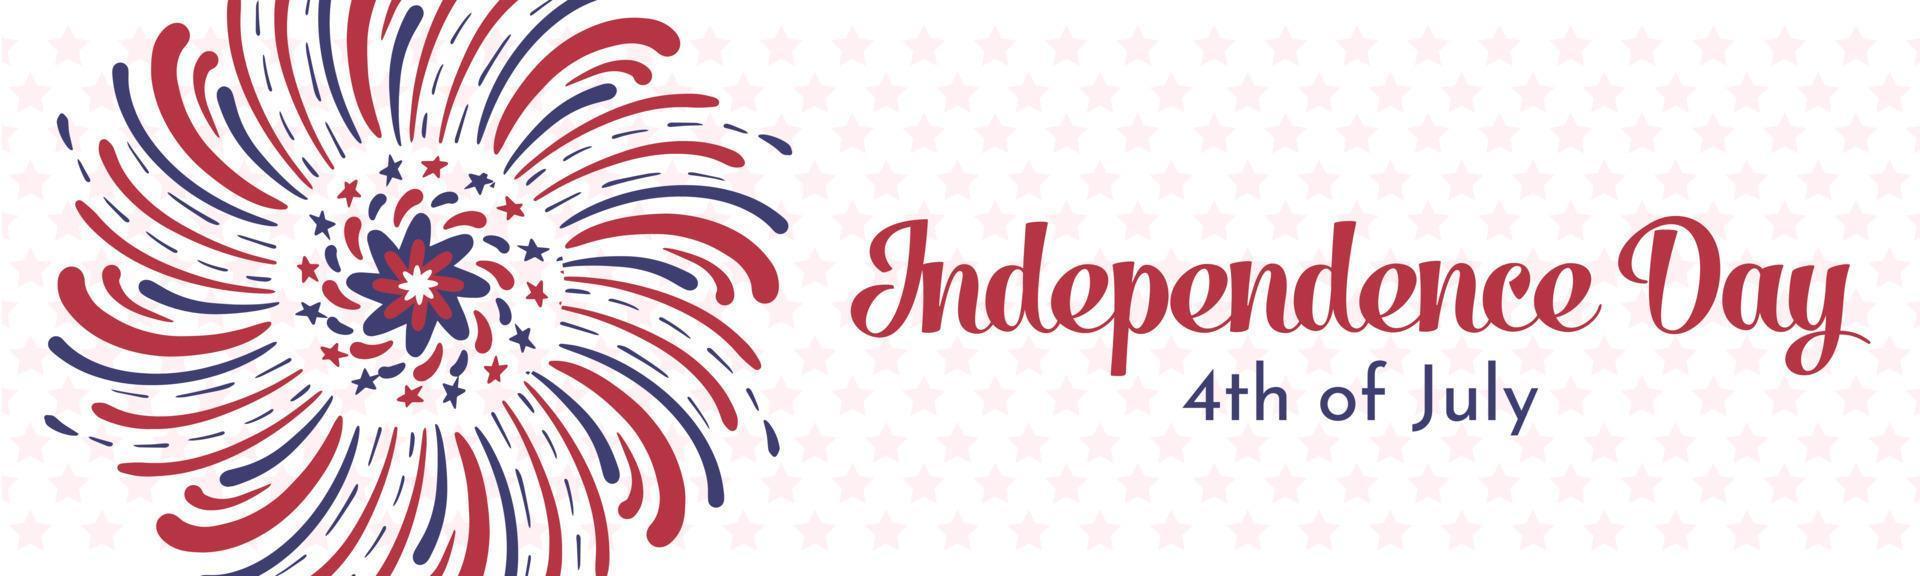 bannière pour le 4 juillet, fête de l'indépendance. feux d'artifice artistiques dessinés à la main avec des lignes et des étoiles rouges et bleues du drapeau américain. conception de modèle de bannière de vecteur horizontal long.